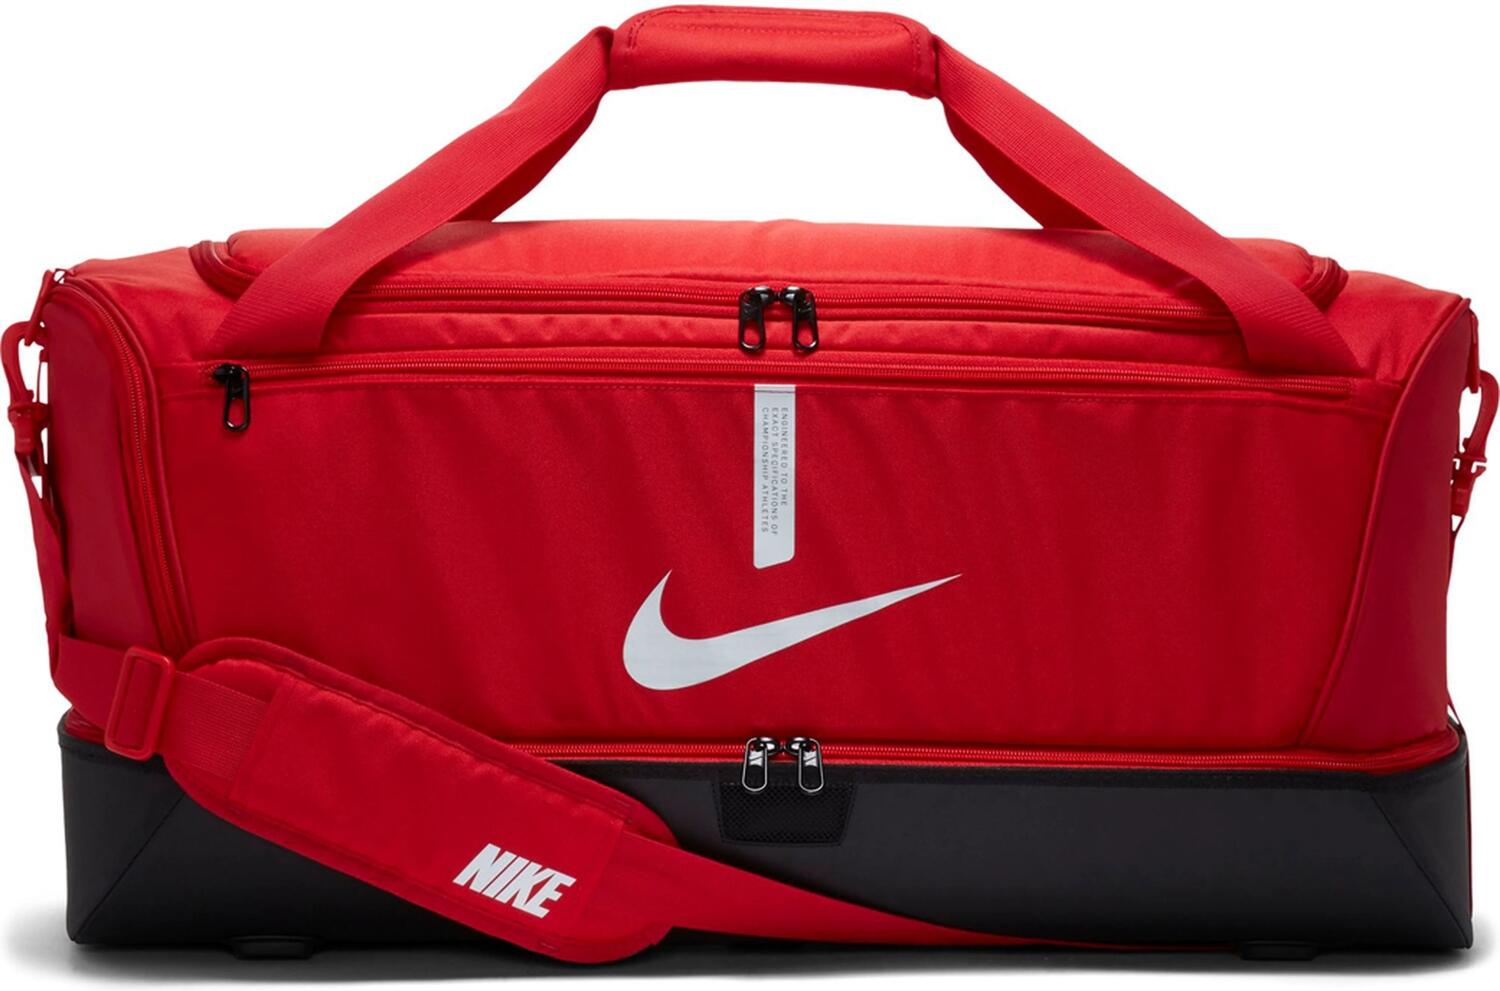 Nike Academy Team Soccer Hardcase Tasche L (657 university red/black/white)